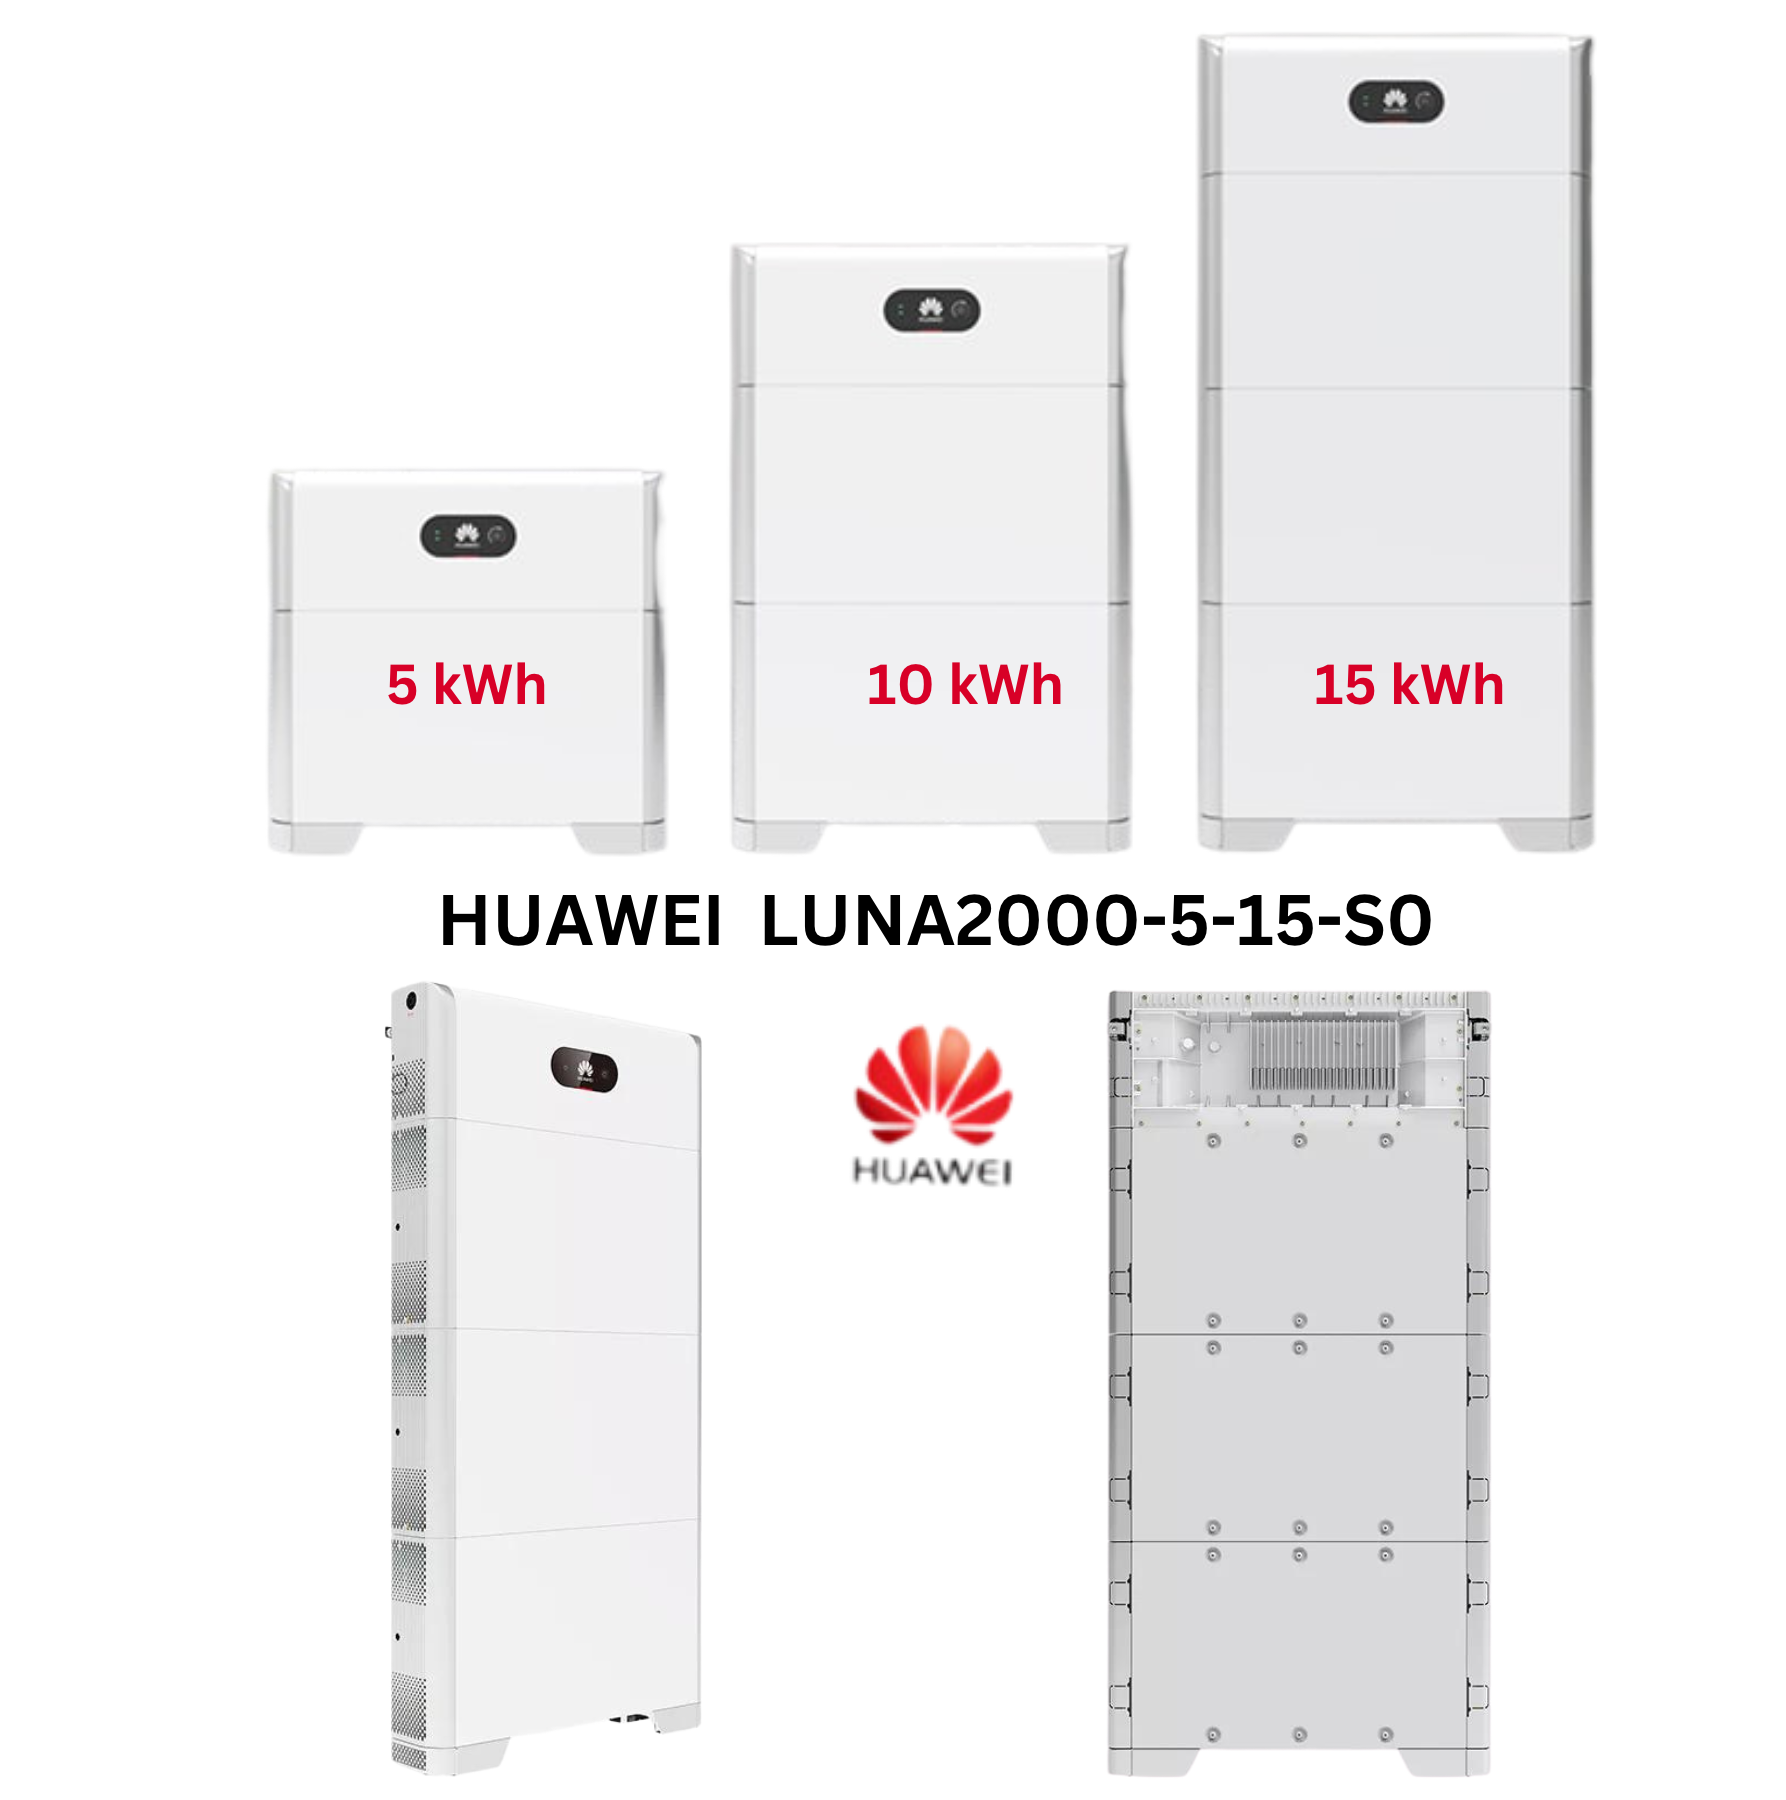 Huawei Wechselrichter [Sun2000] + Huawei Batterie [Luna2000]